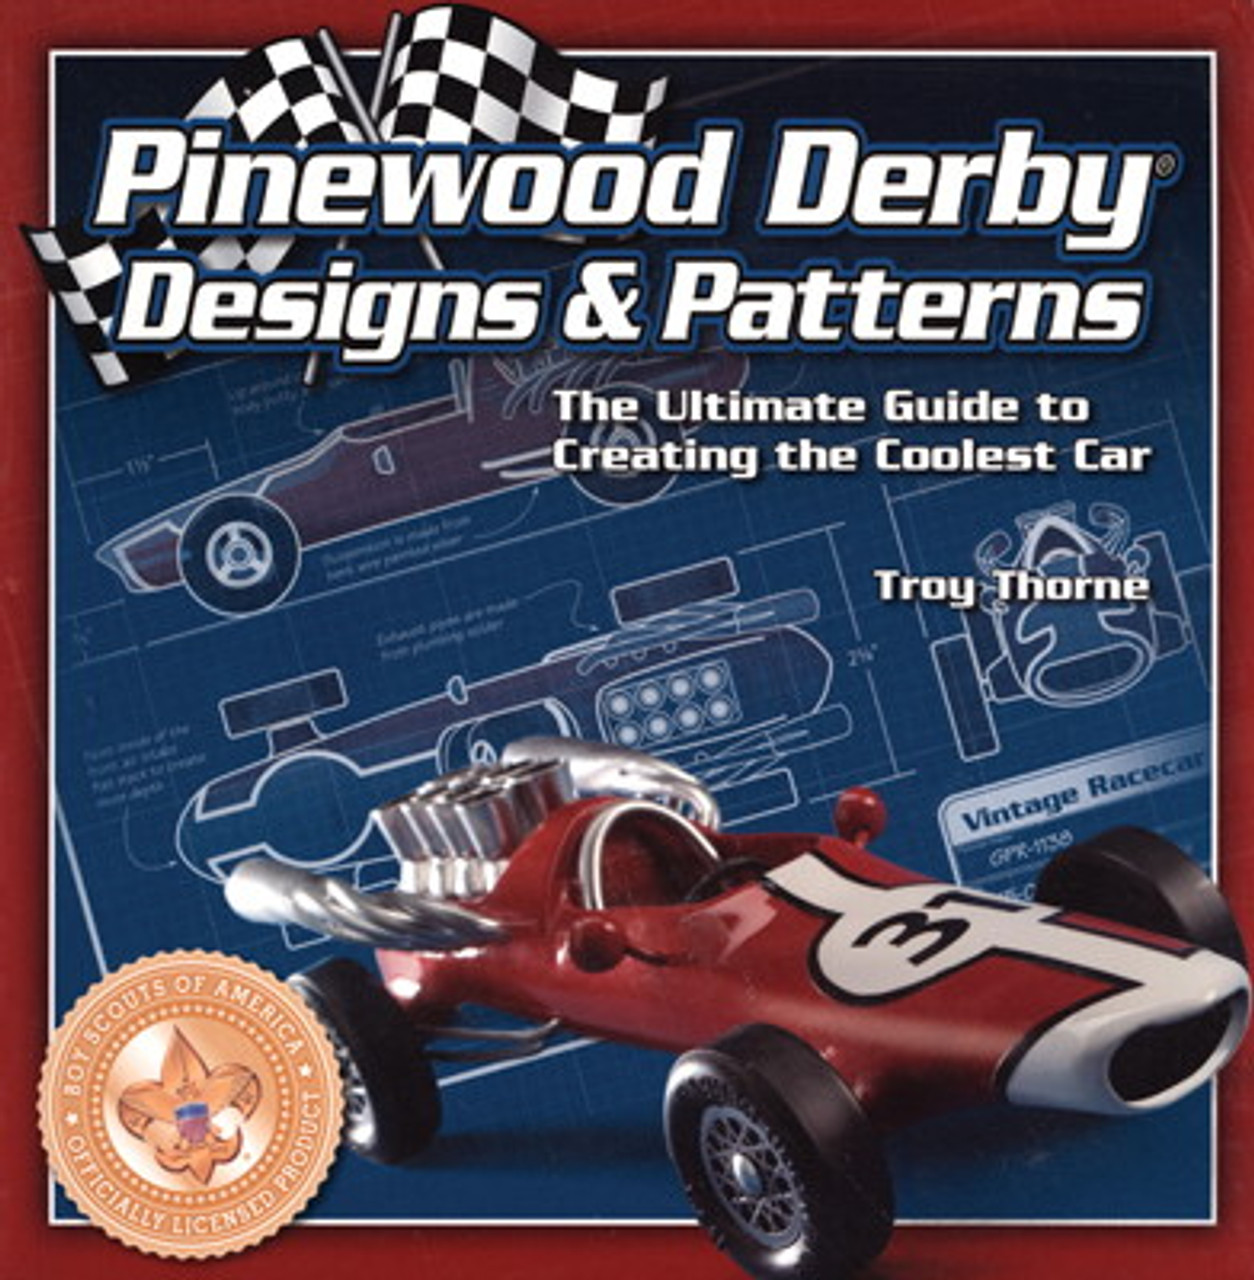 funny pinewood derby car designs